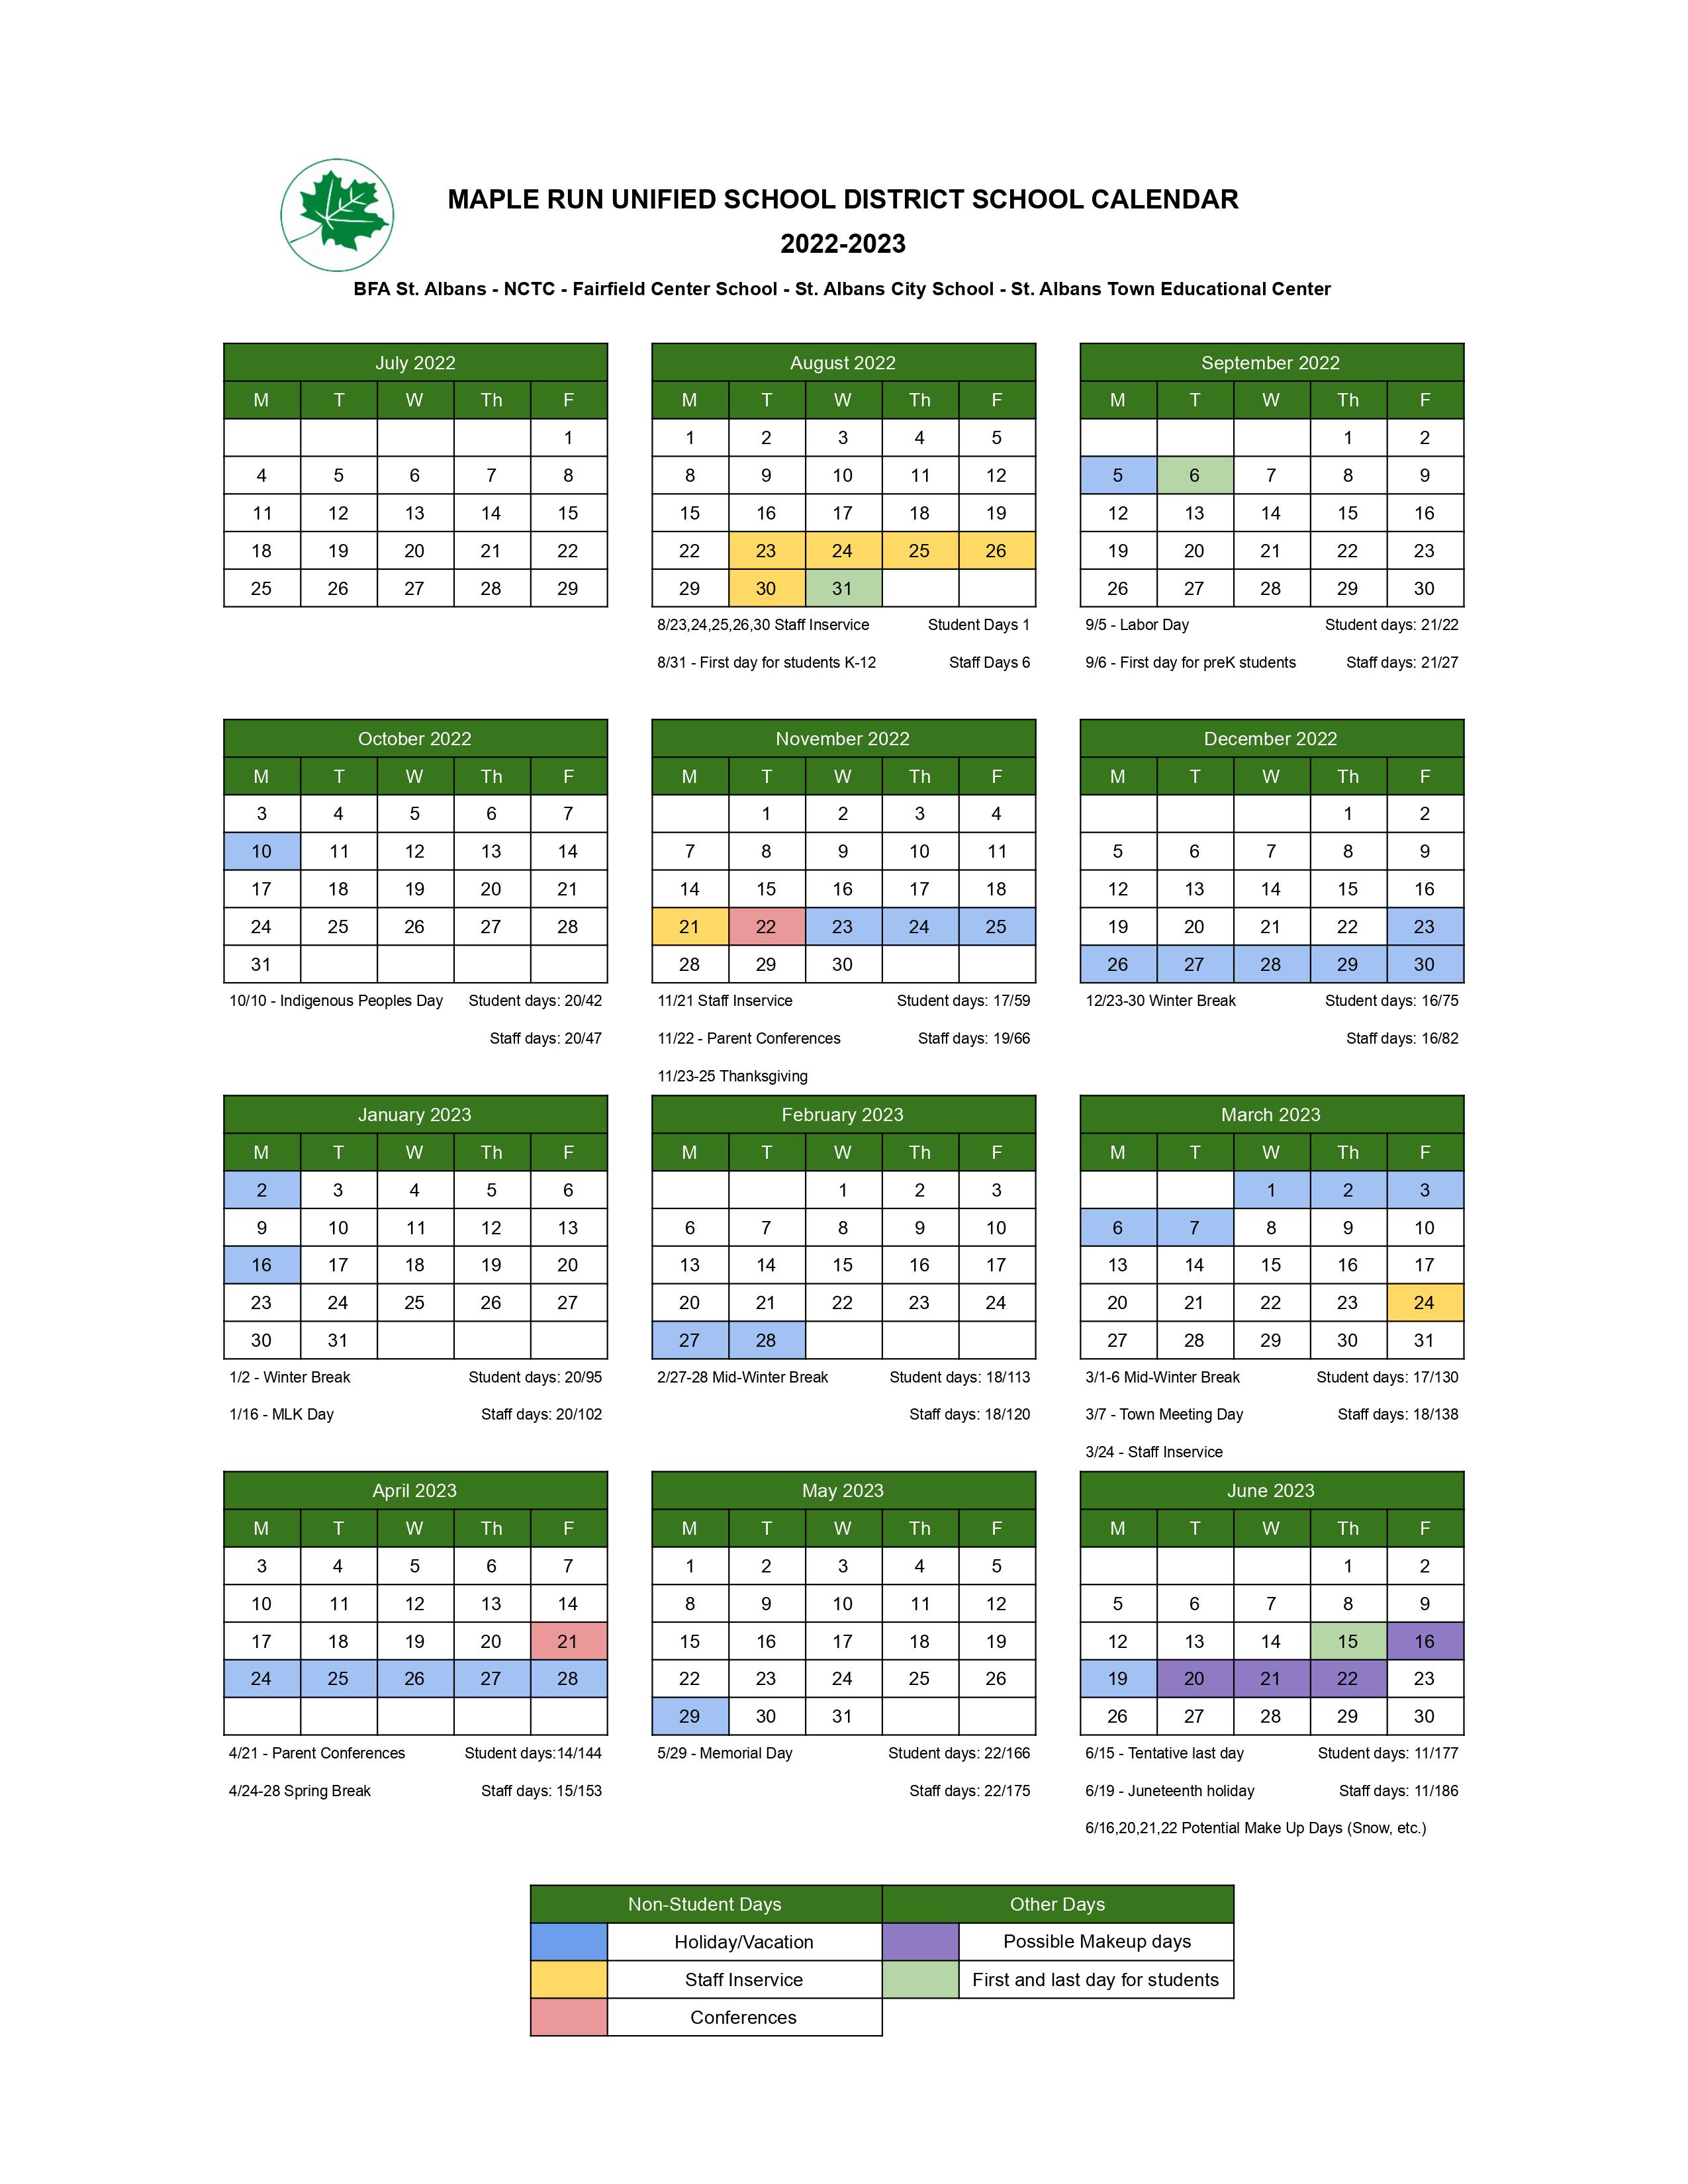 MRUSD 22-23 School Calendar